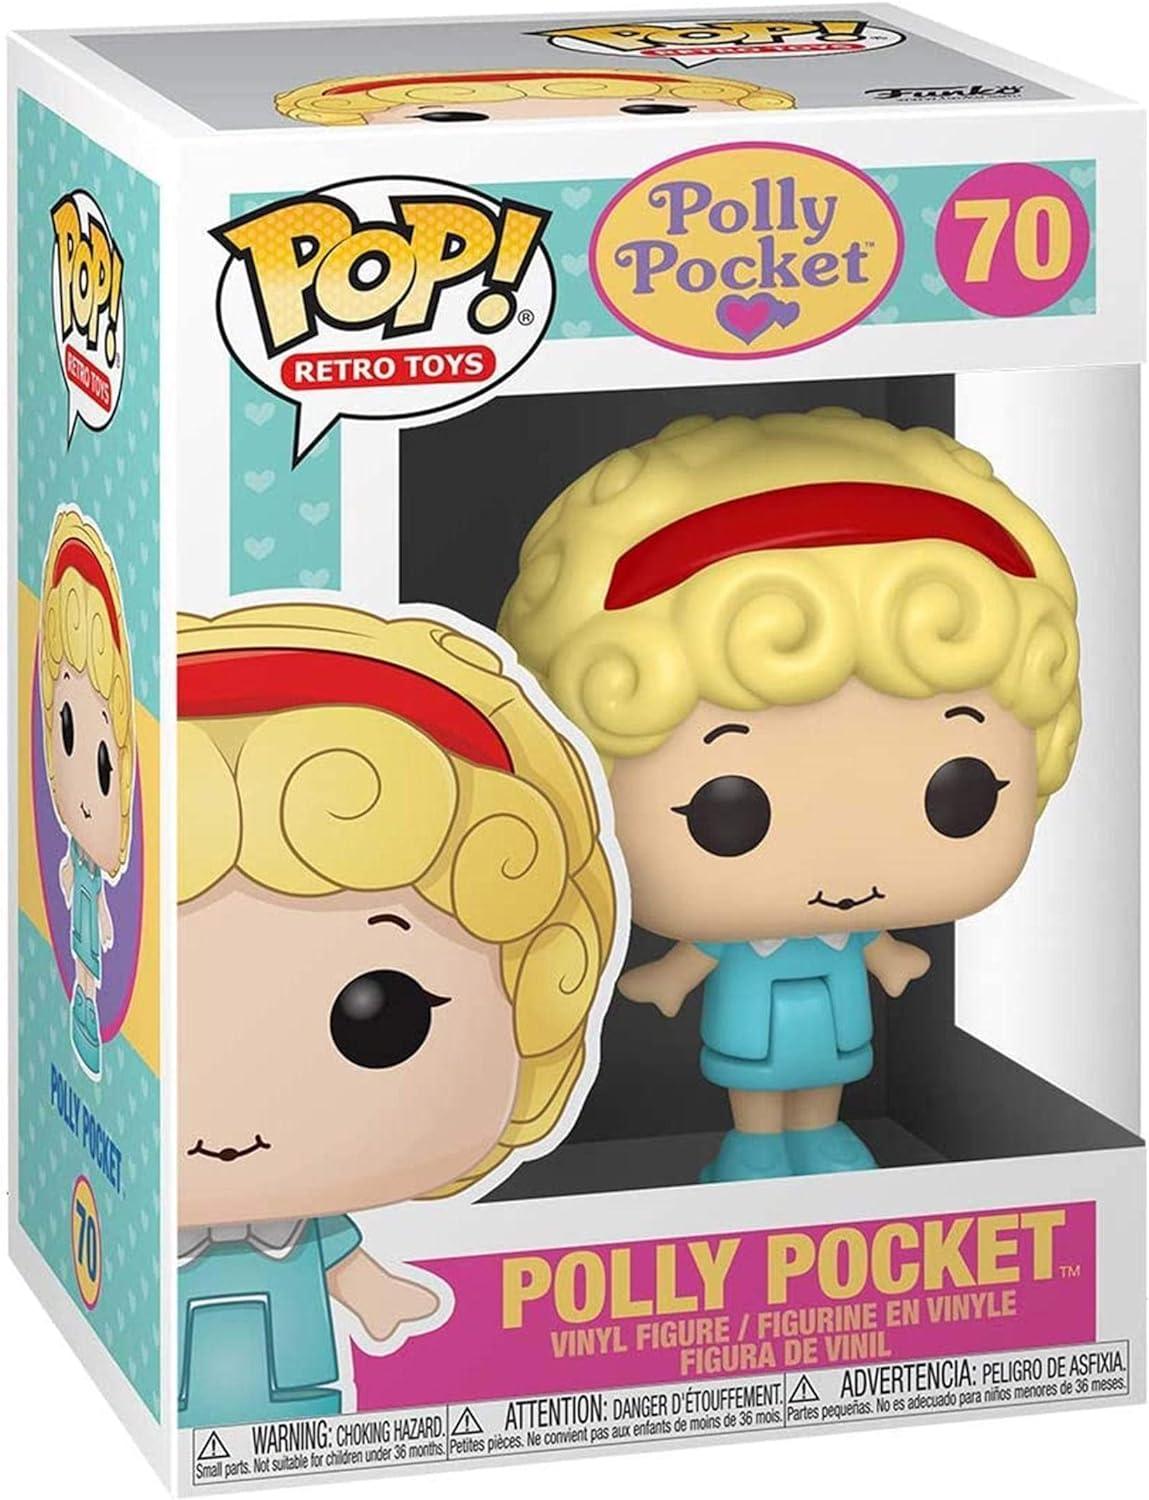 Polly Pocket: Funko Pop! Retro Toys - Polly Pocket #70 - Magic Dreams Store